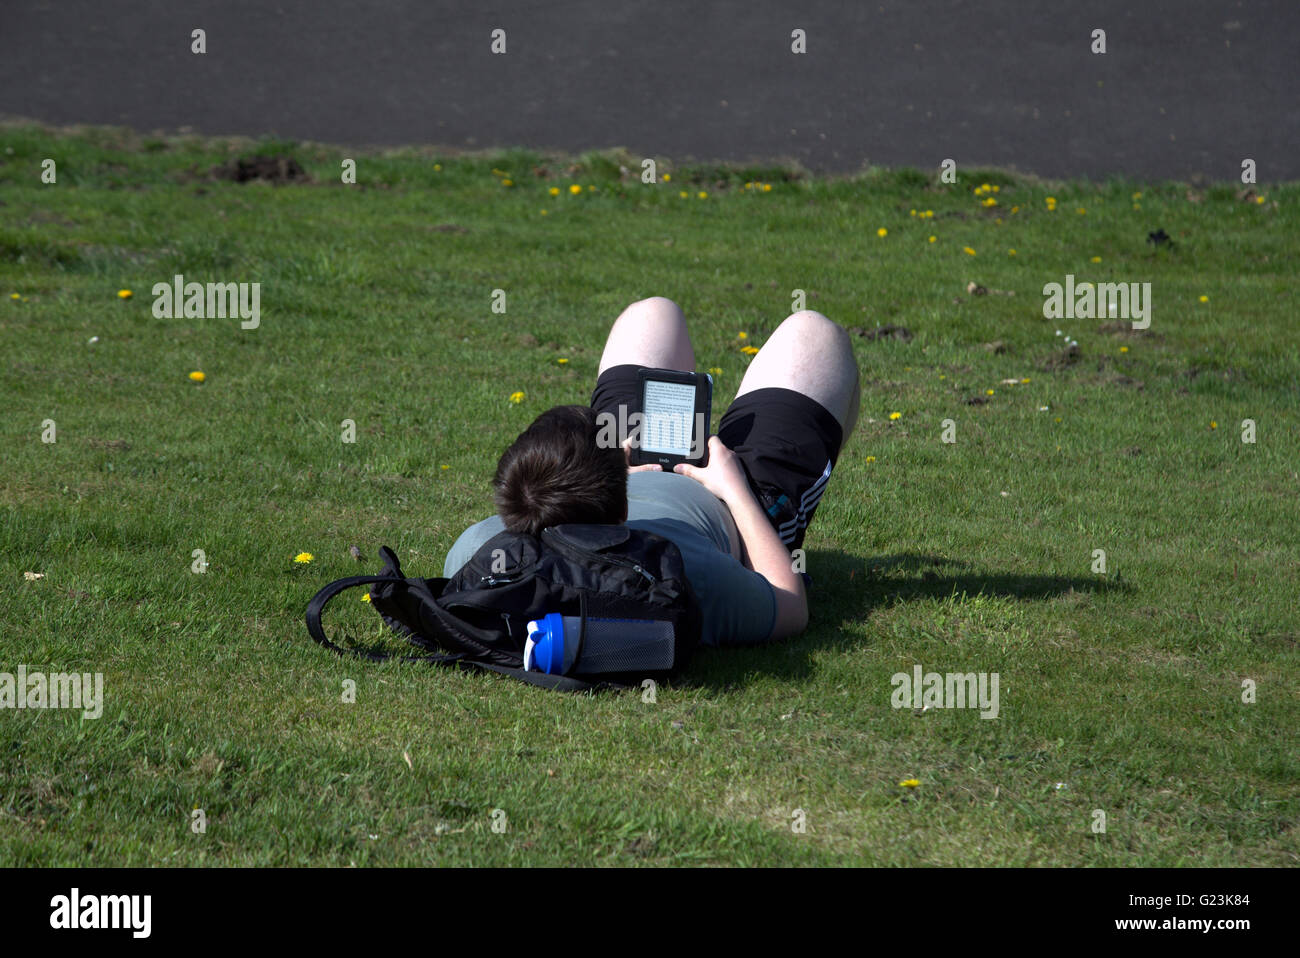 Homme ou garçon couché sur l'herbe lecture livre Kindle Reader dans le parc Kelvingrove Glasgow, Écosse, Royaume-Uni. Banque D'Images